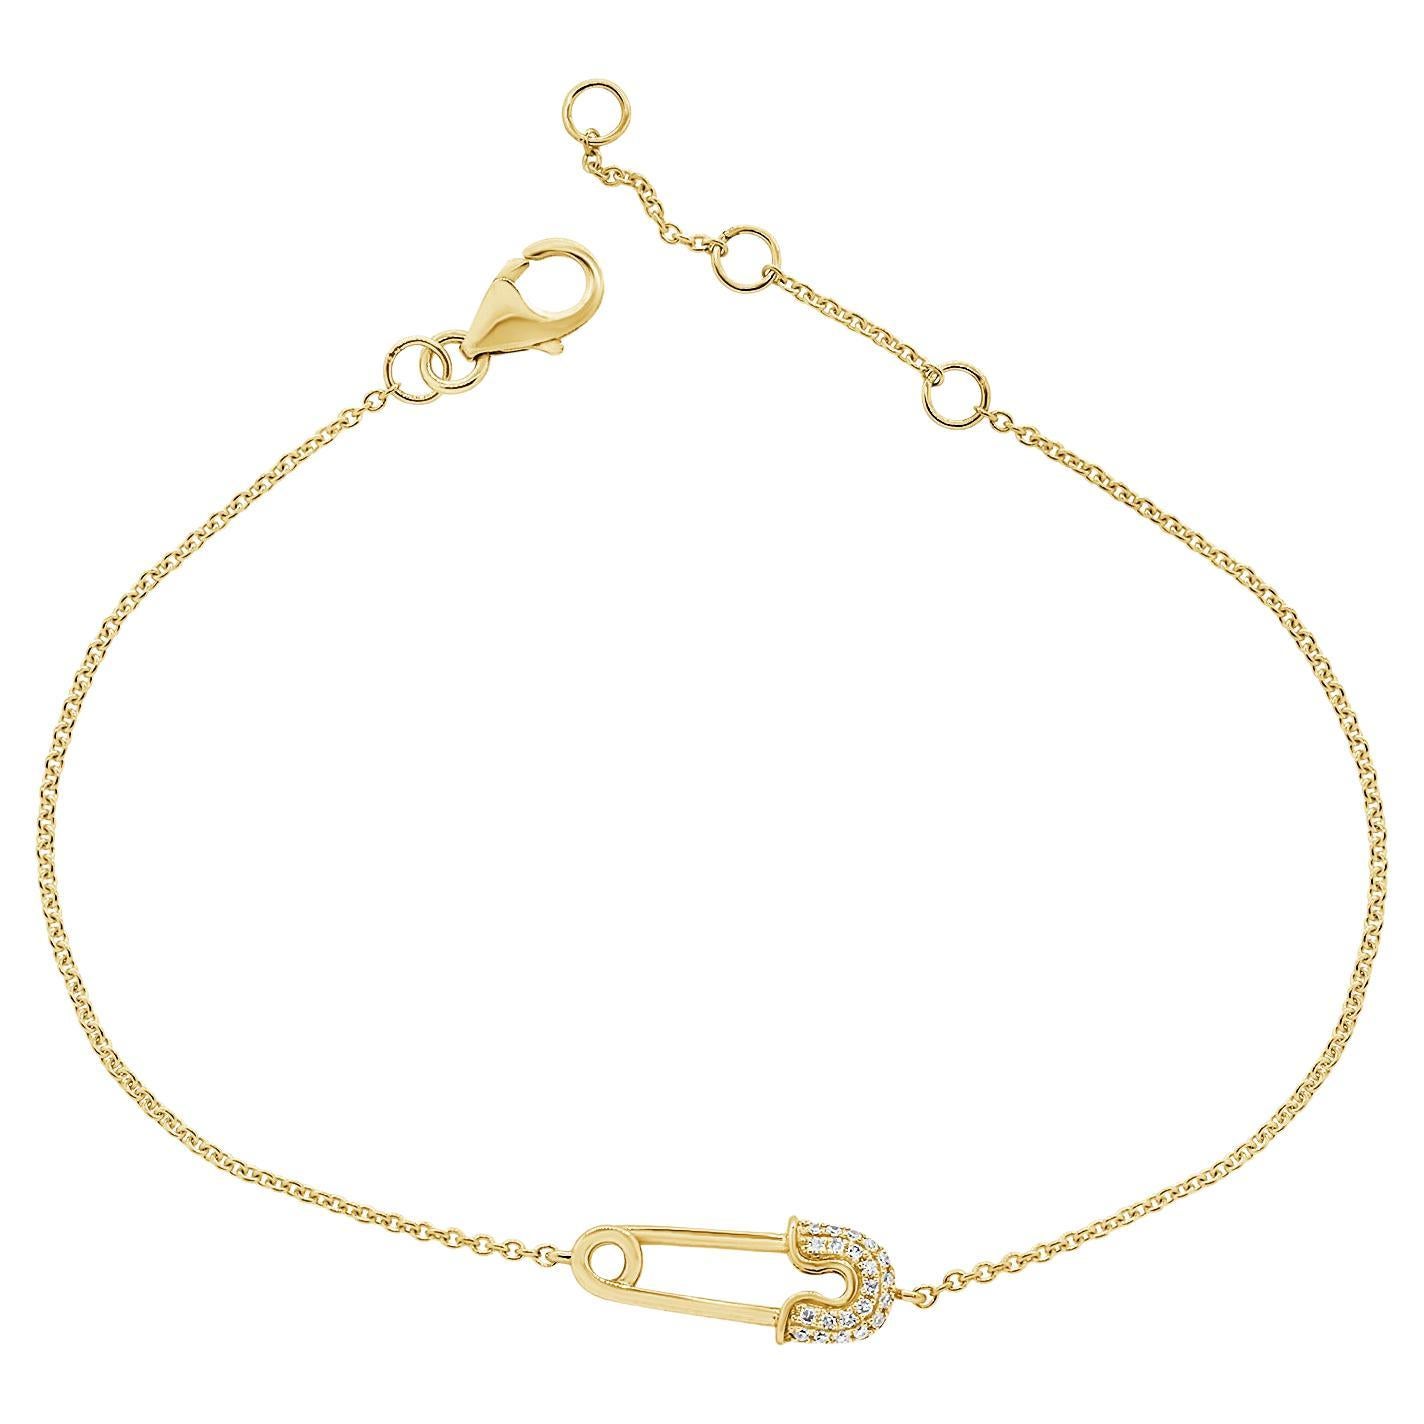 Tom Binns necklace | Gothic jewelry, Safety pin jewelry, Jewelry